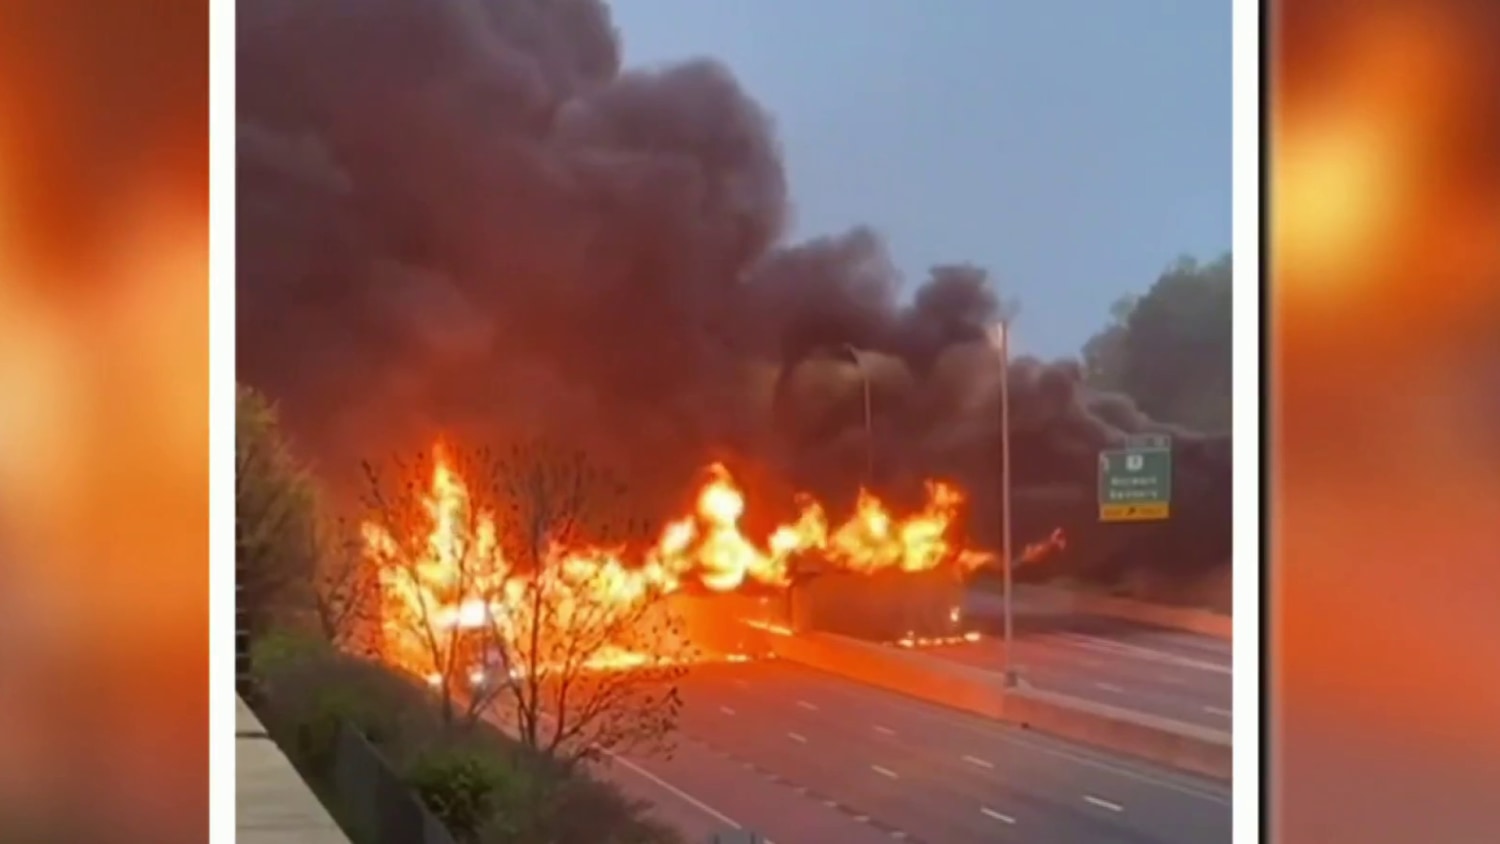 Part of major Northeast highway shut down after fiery truck crash – NBC News